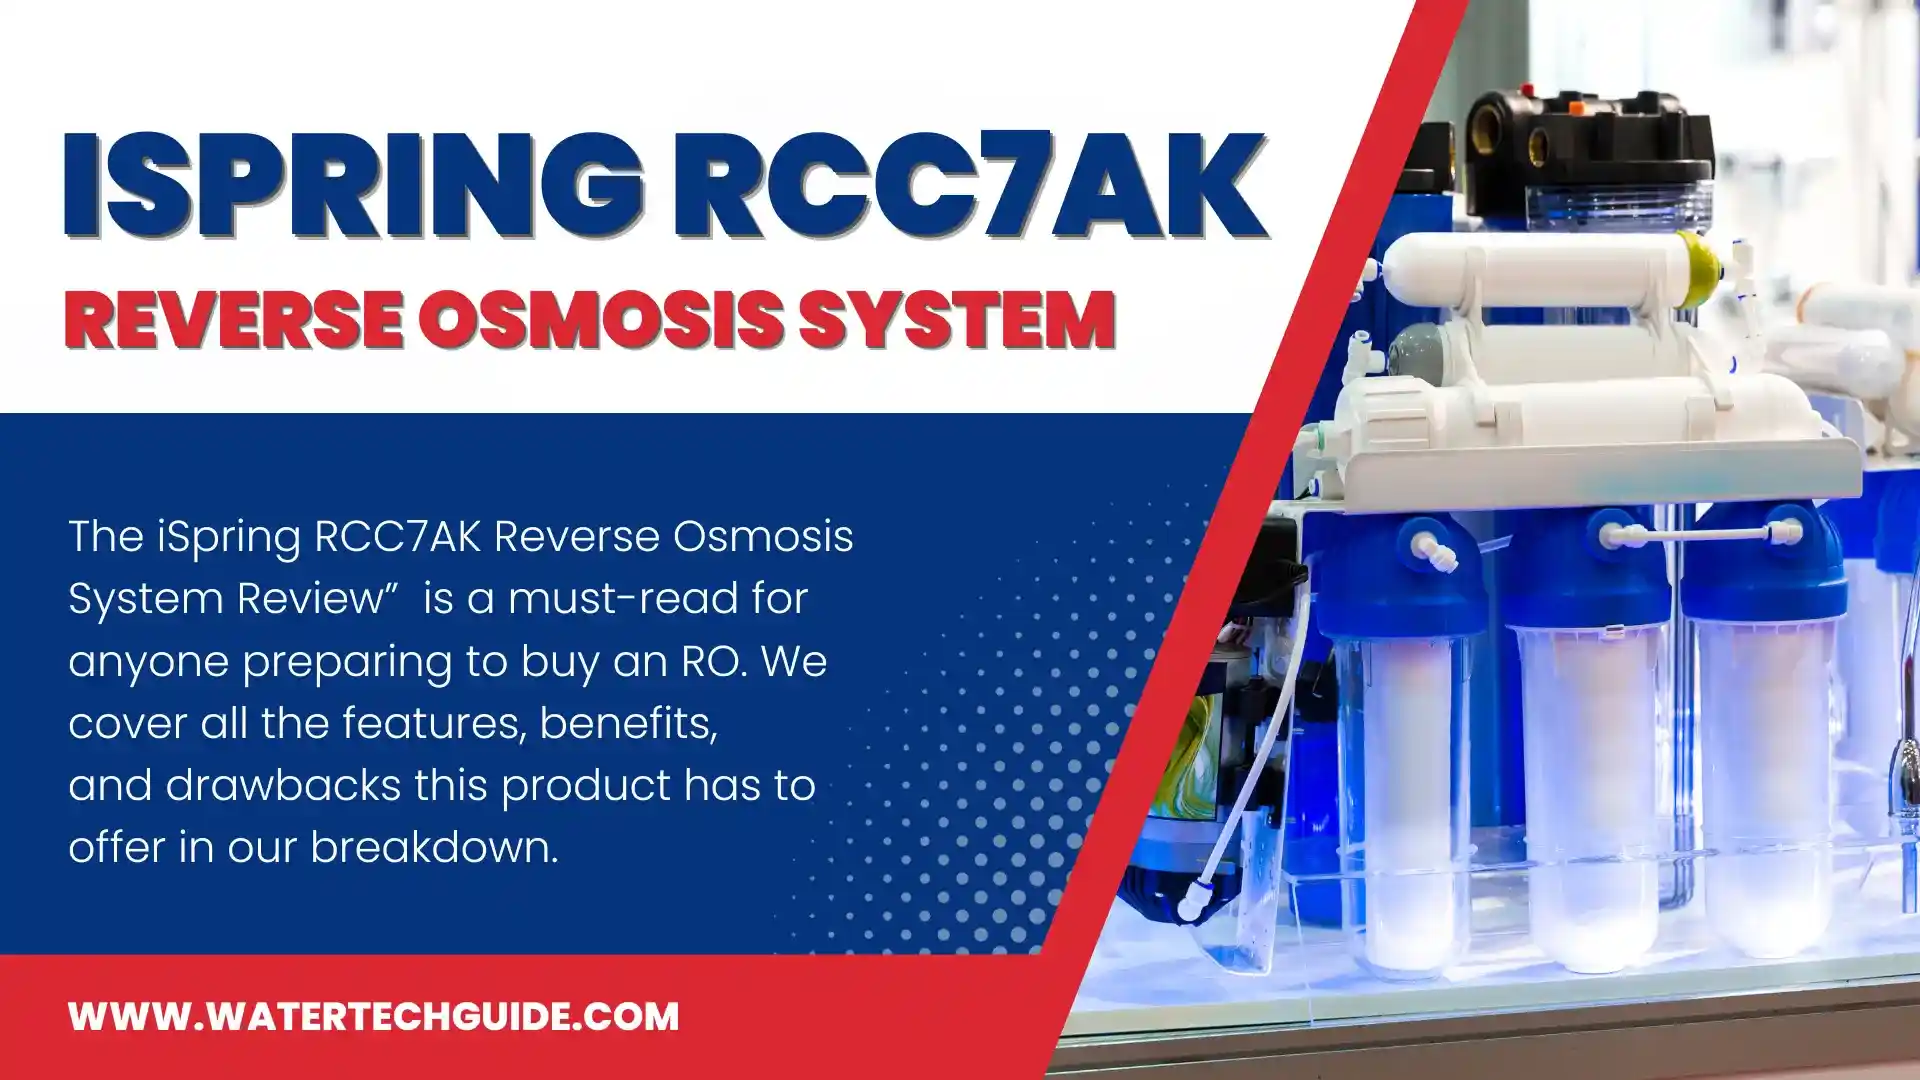 iSpring RCC7AK Reverse Osmosis System